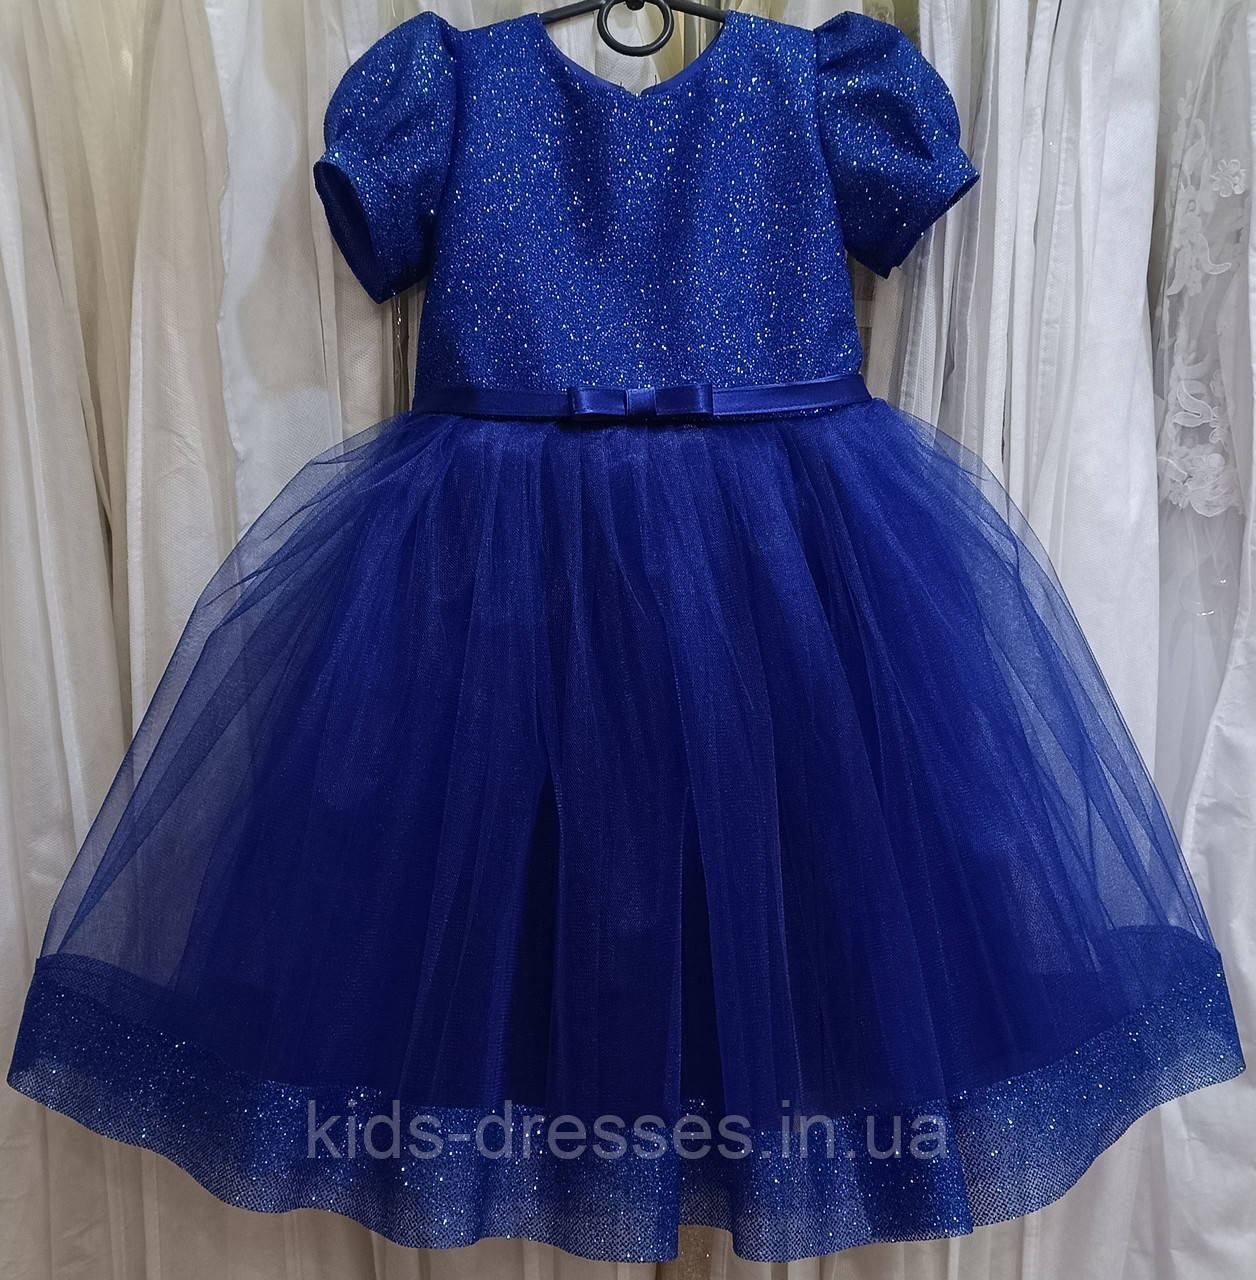 Блискуча синя ошатна дитяча сукня з рукавчиком-ліхтариком на 4-6 років